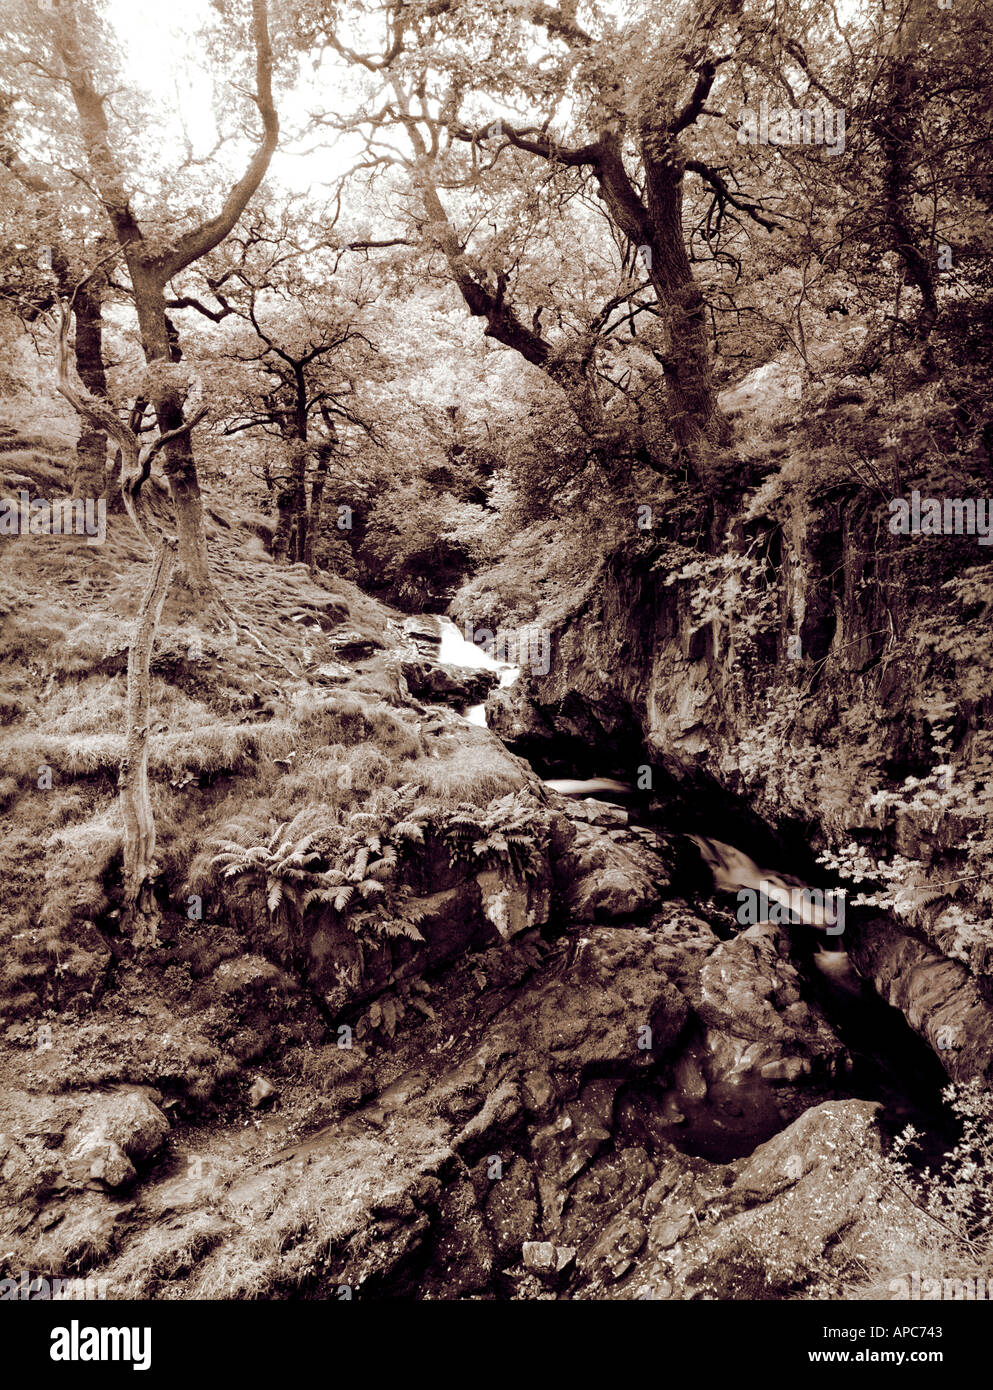 ;La forêt ; aira force lake District, Cumbria, Angleterre  ; ; Royaume-Uni ;;sépia Noir et blanc ; Banque D'Images